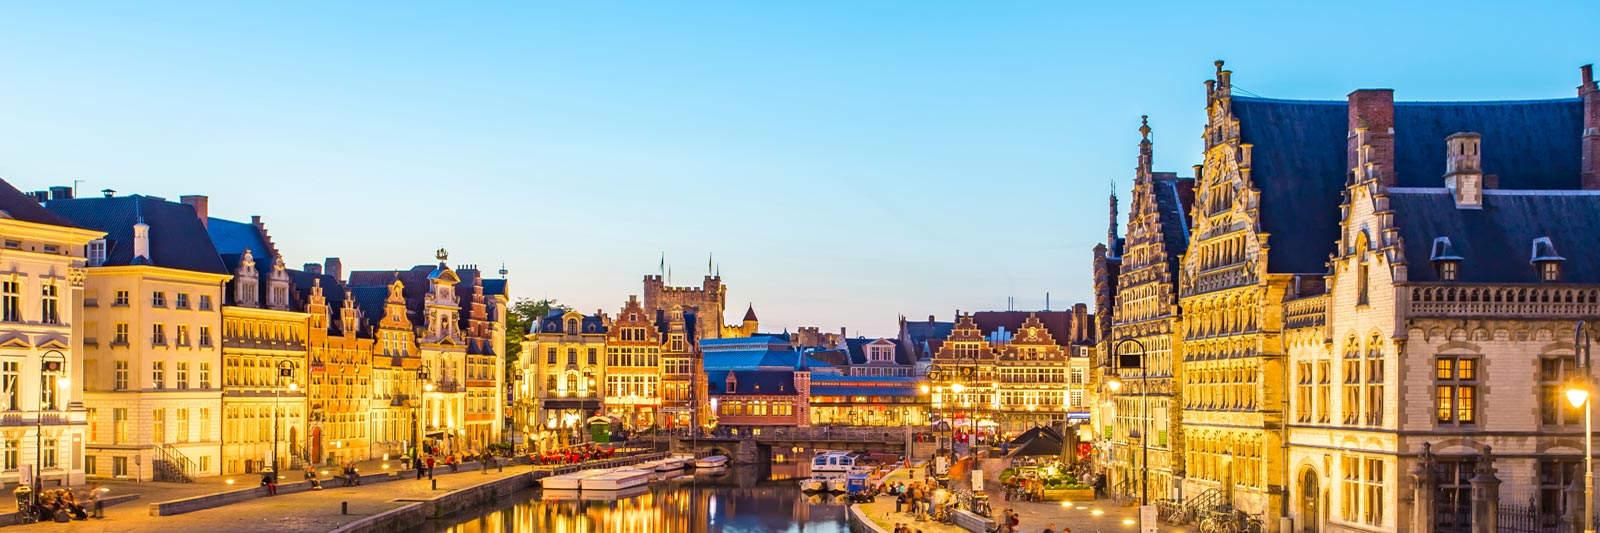 1.038 Ferienwohnungen und Ferienhäuser an der belgischen Nordseeküste - tourist-online.de